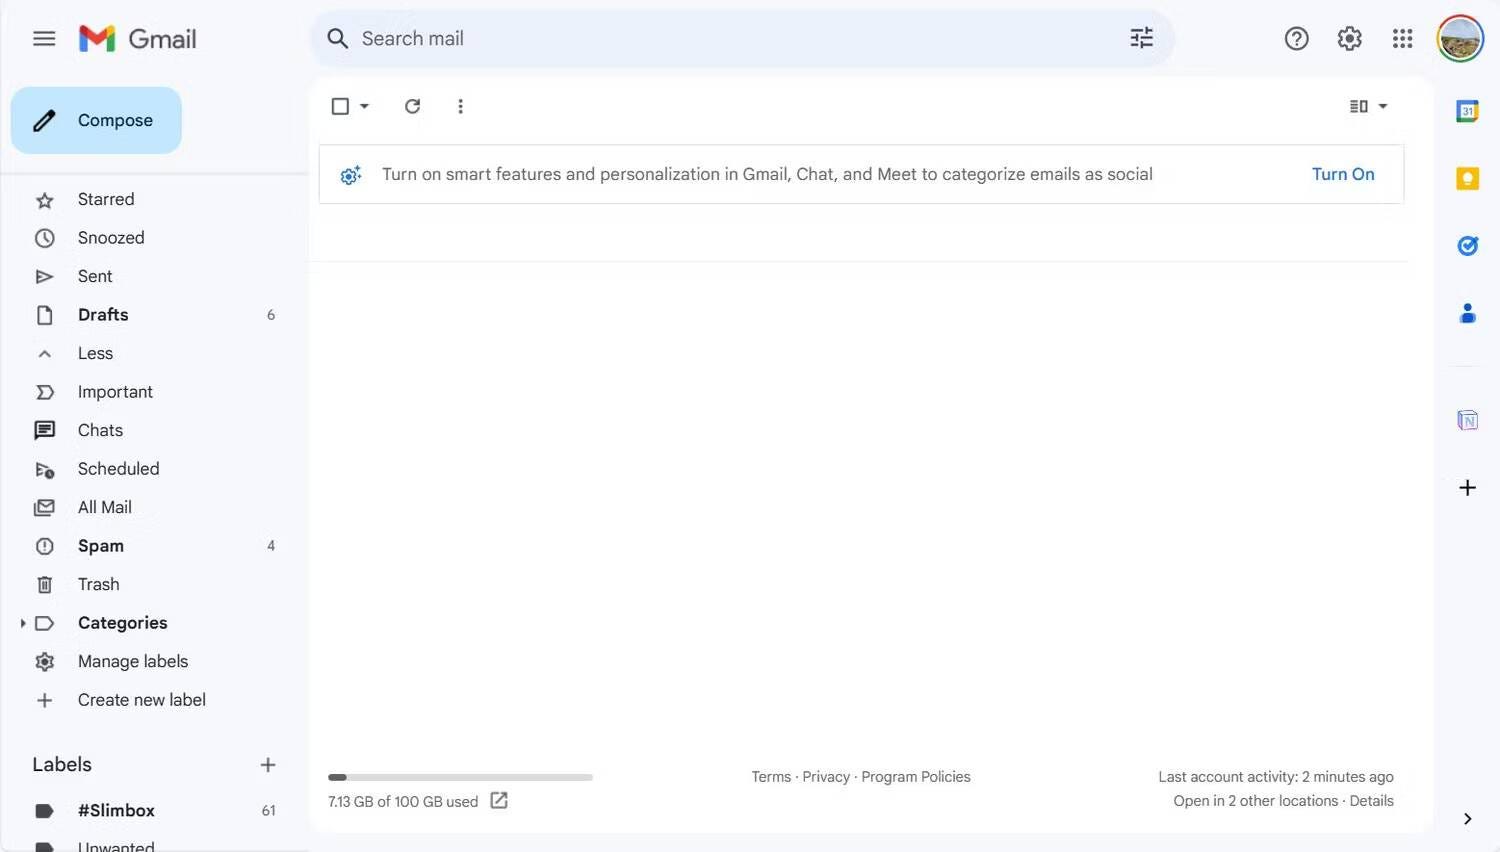 كيفية البحث عن البريد غير الهام وحذفه في Gmail: الطرق البسيطة لإدراة رسائلك - شروحات